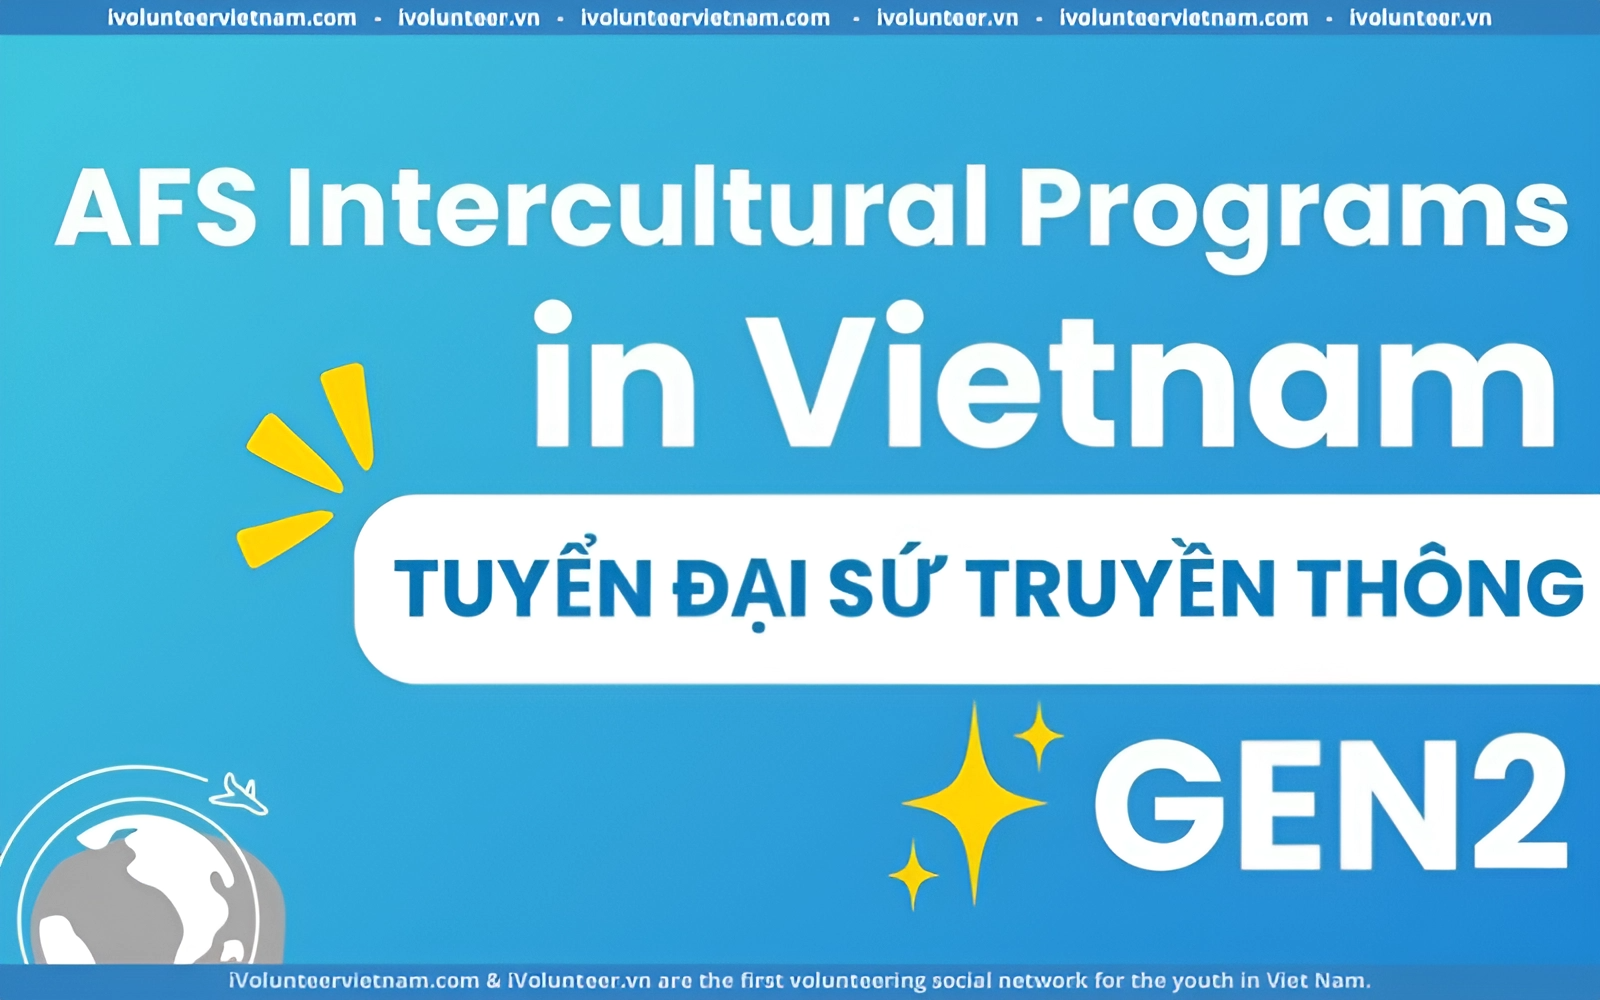 Tổ Chức Phi Chính Phủ Afs Intercultural Programs Tại Vietnam Mở Đơn Tuyển Đại Sứ Truyền Thông Thế Hệ 2 Năm 2024